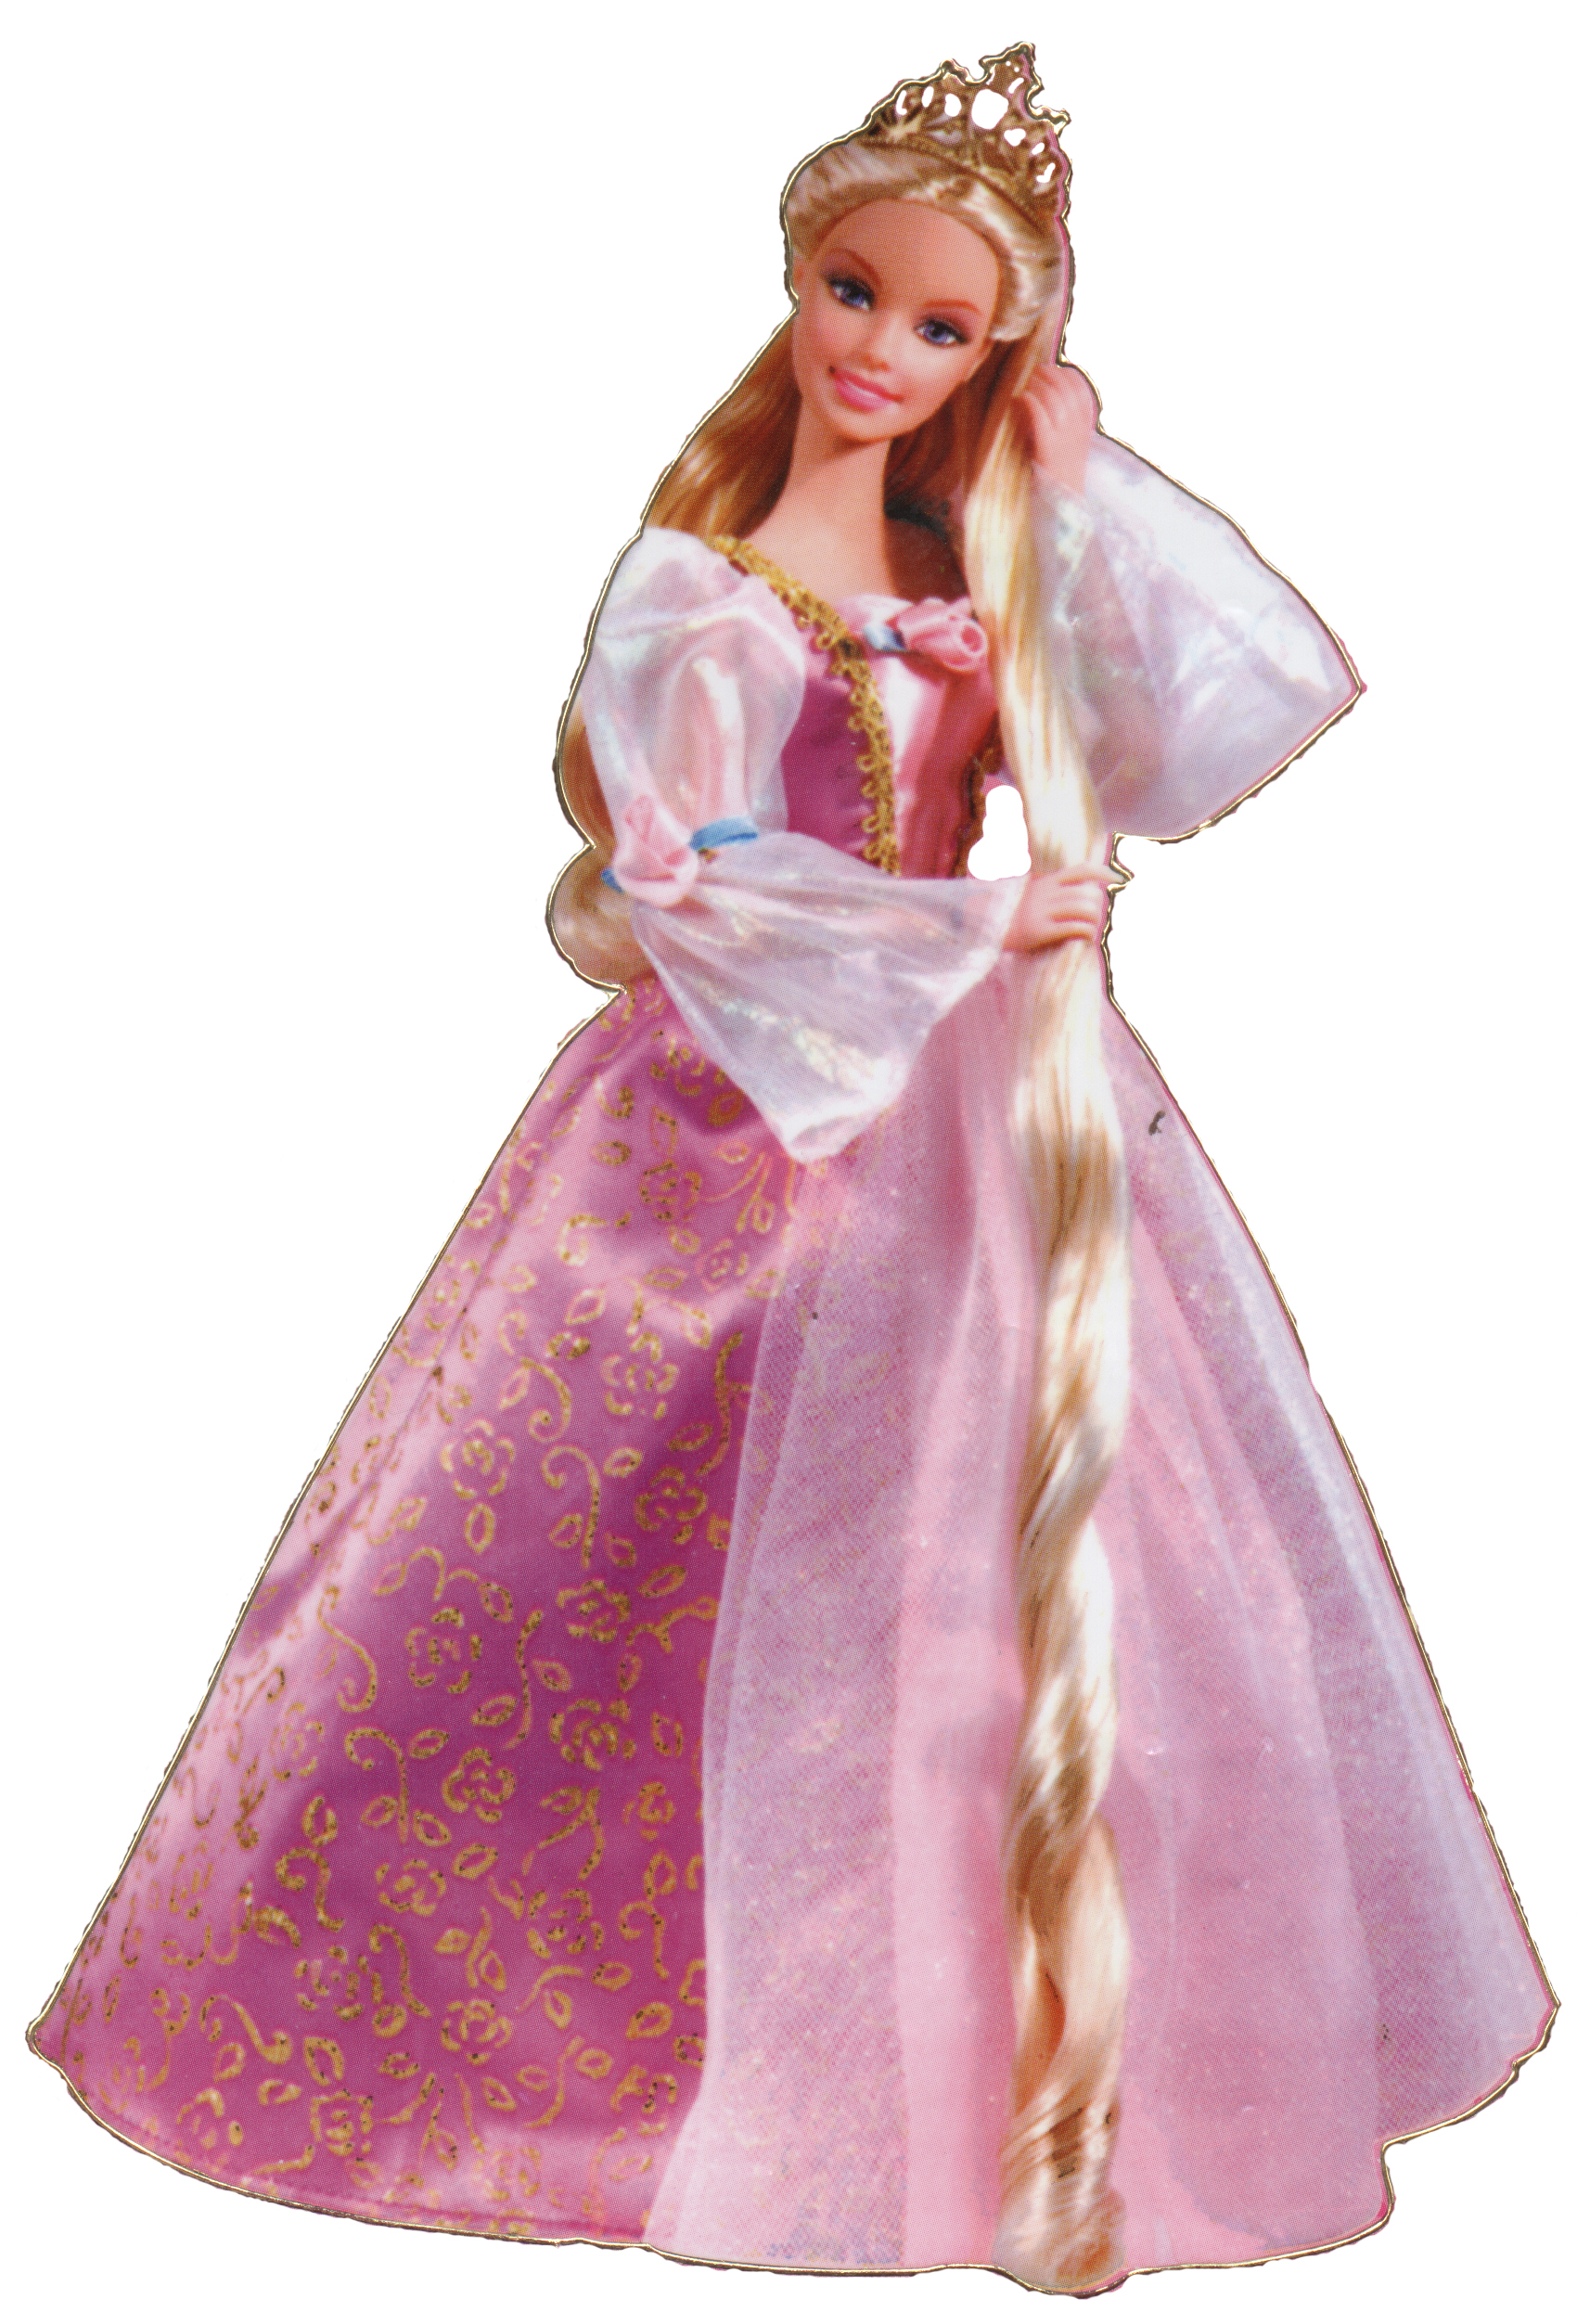 barbie as rapunzel full movie